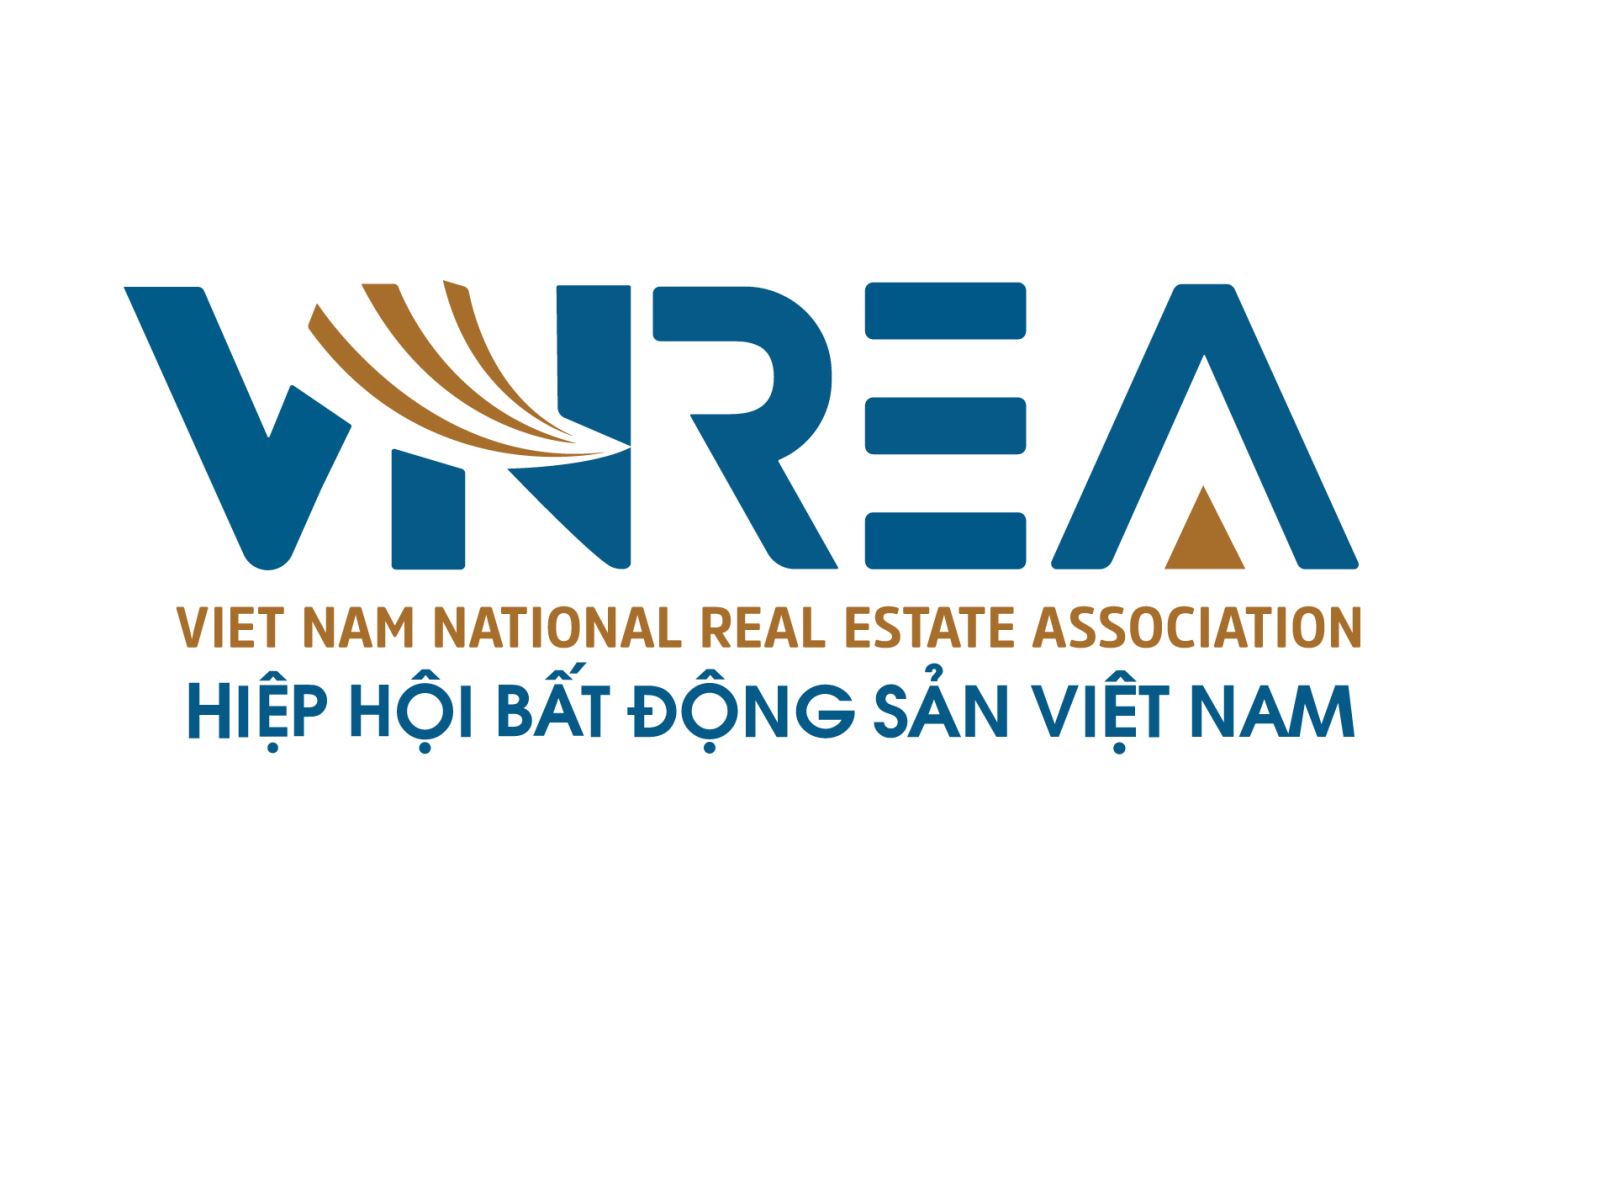 Hiệp hội Bất động sản Việt Nam ra mắt nhận diện thương hiệu mới - Ảnh 1.